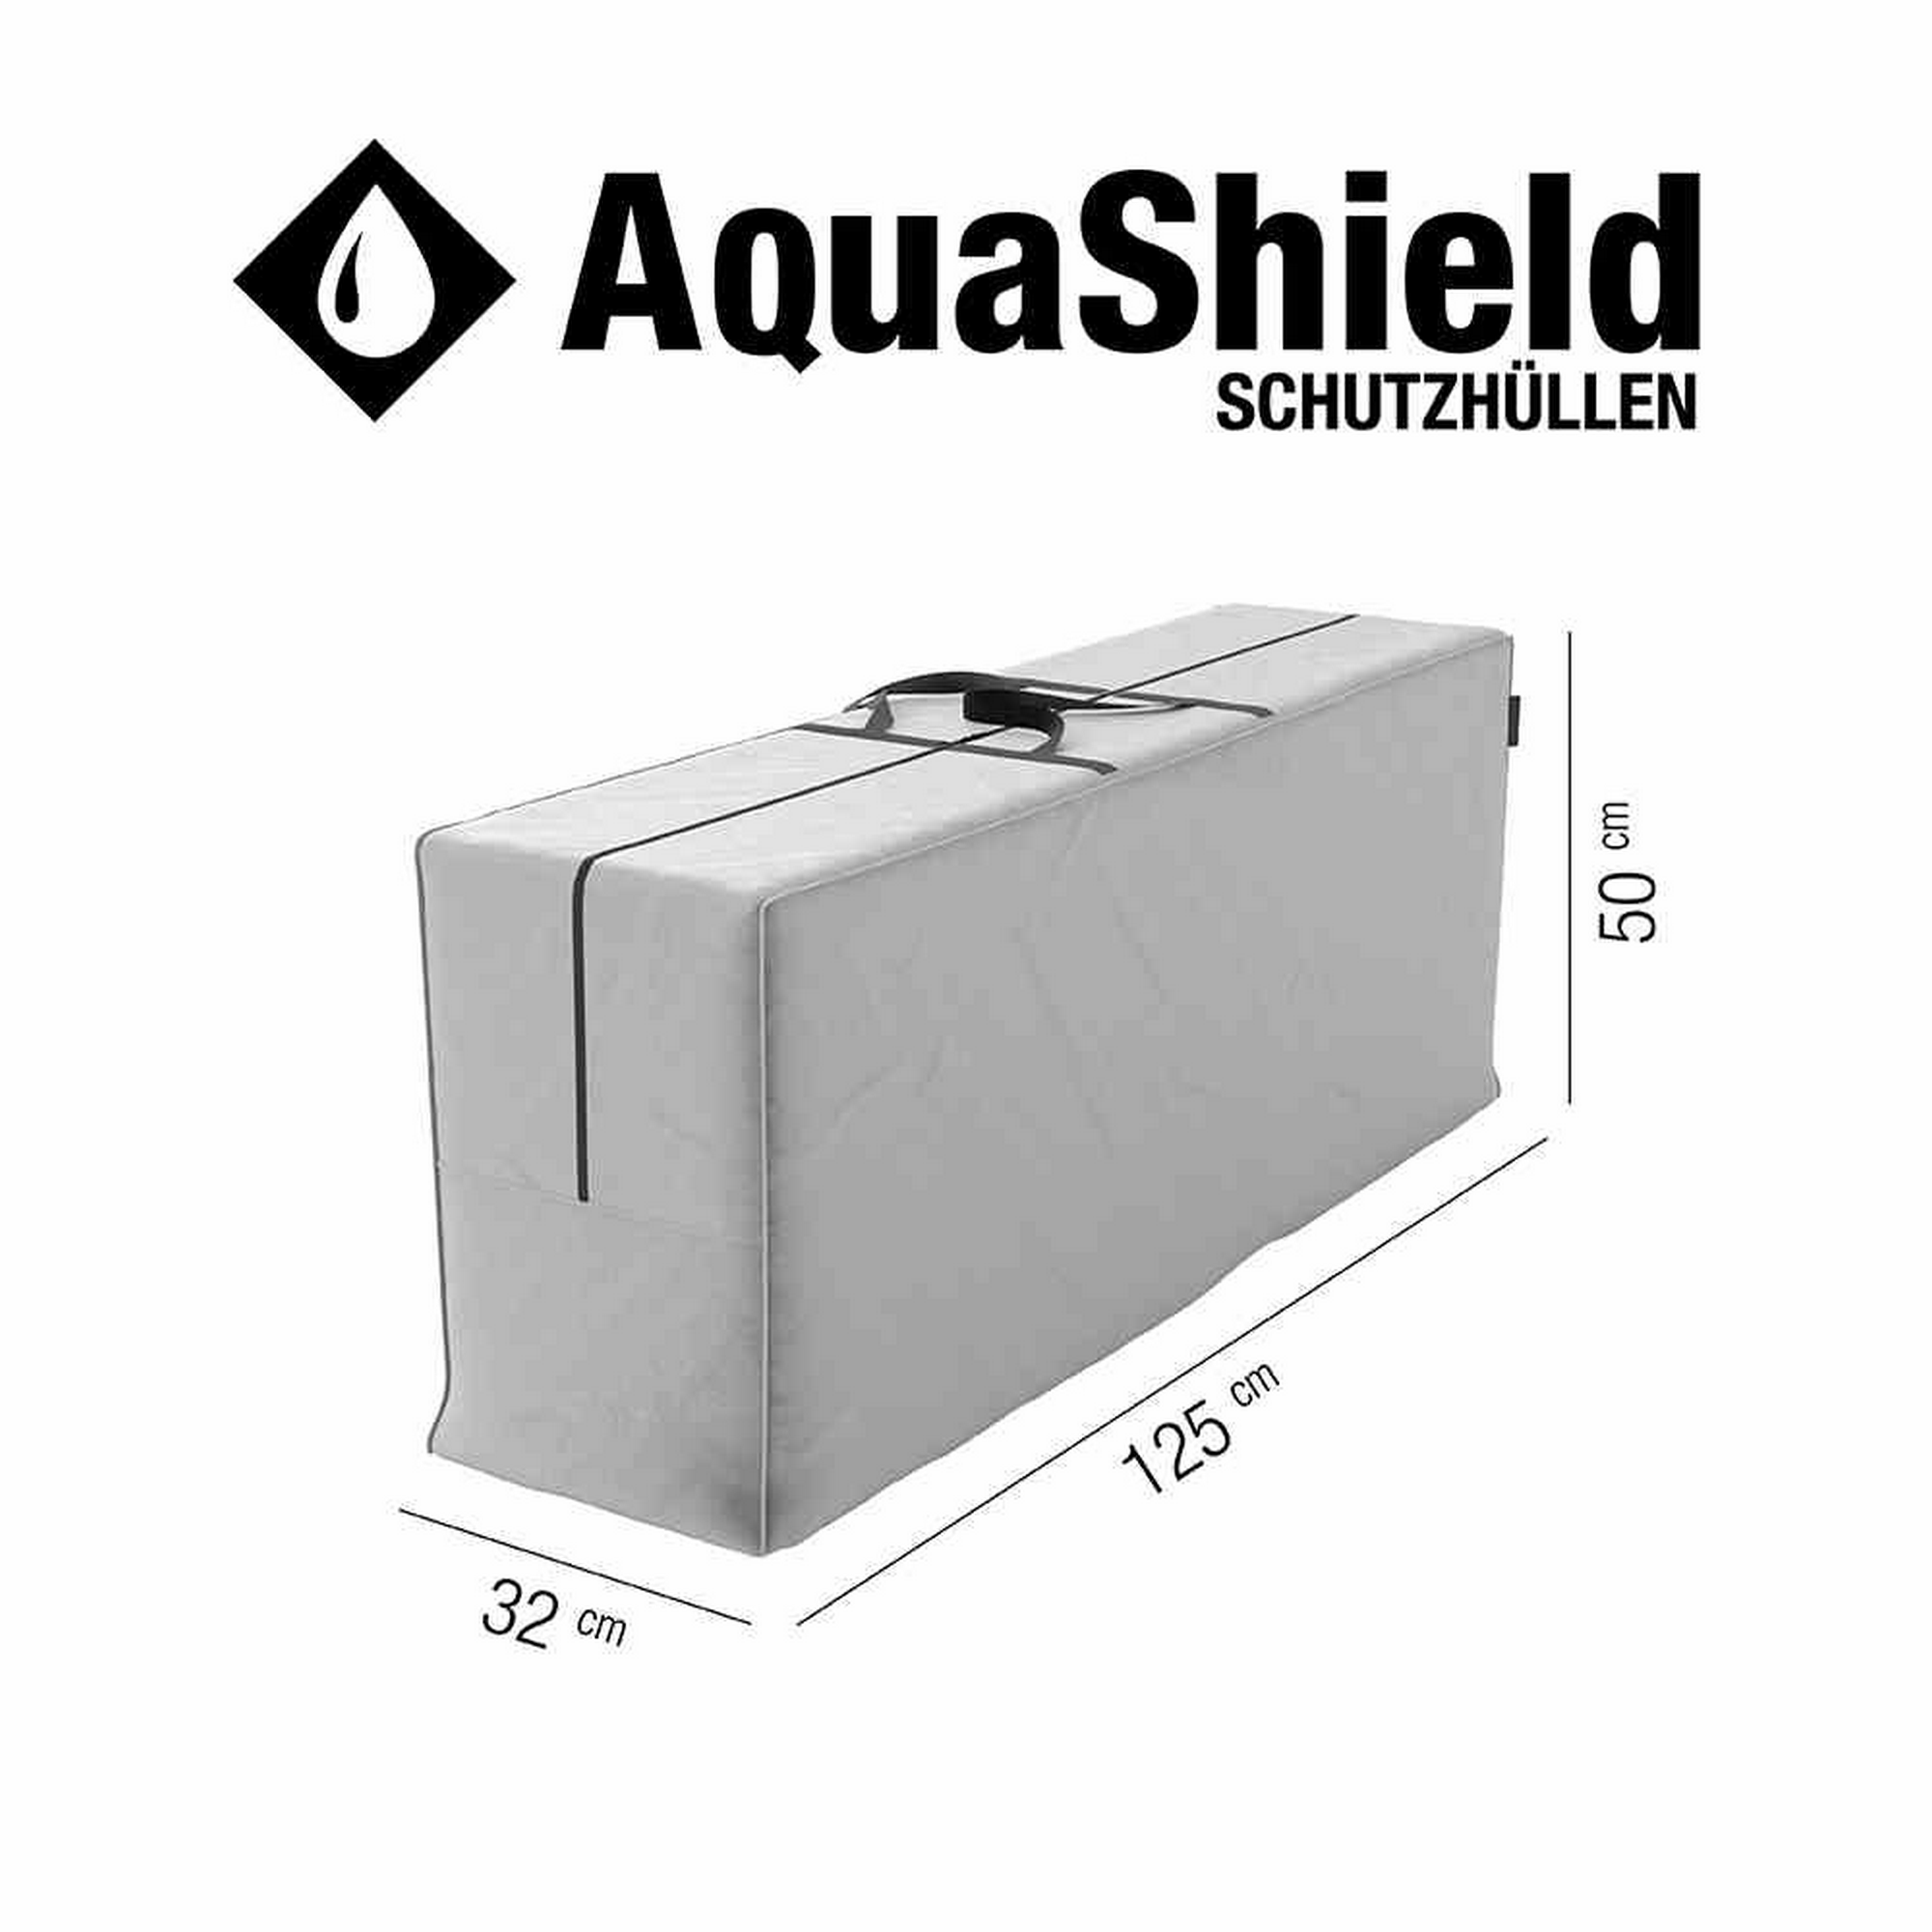 Tragetasche 'AquaShield' für Kissen und Auflagen 125 x 32 x 50 cm + product picture